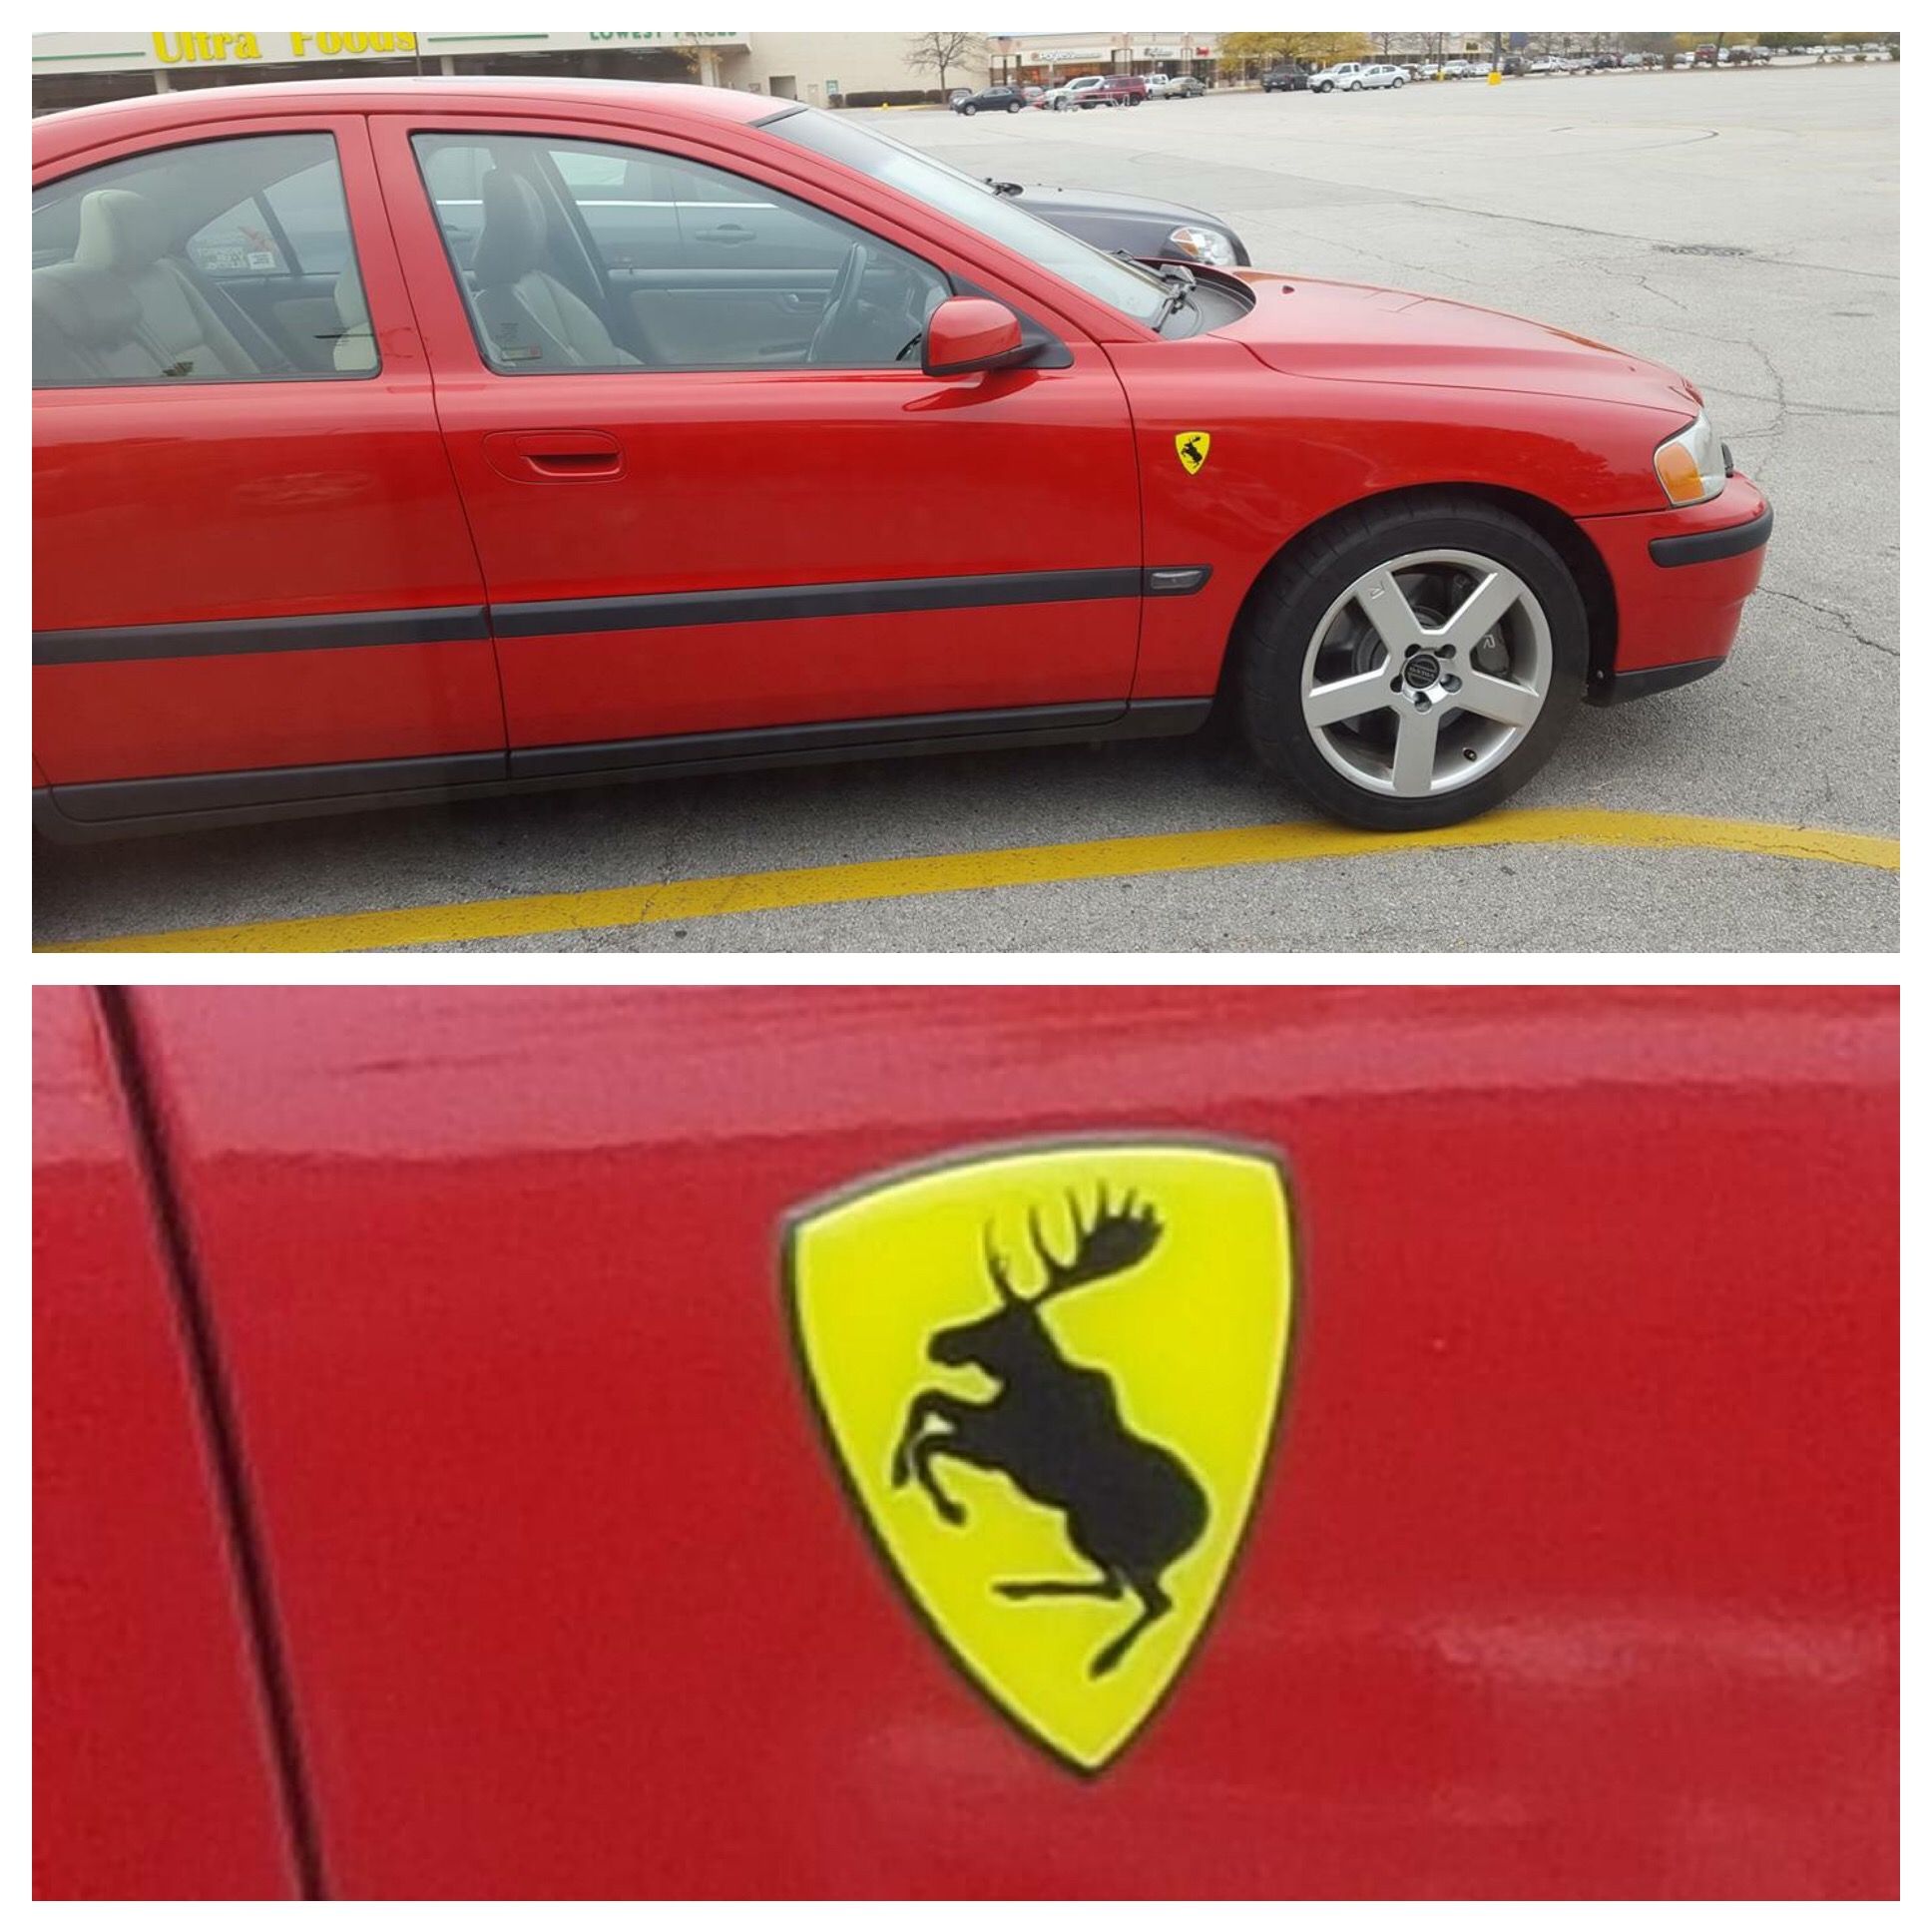 Nice Ferrari... wait